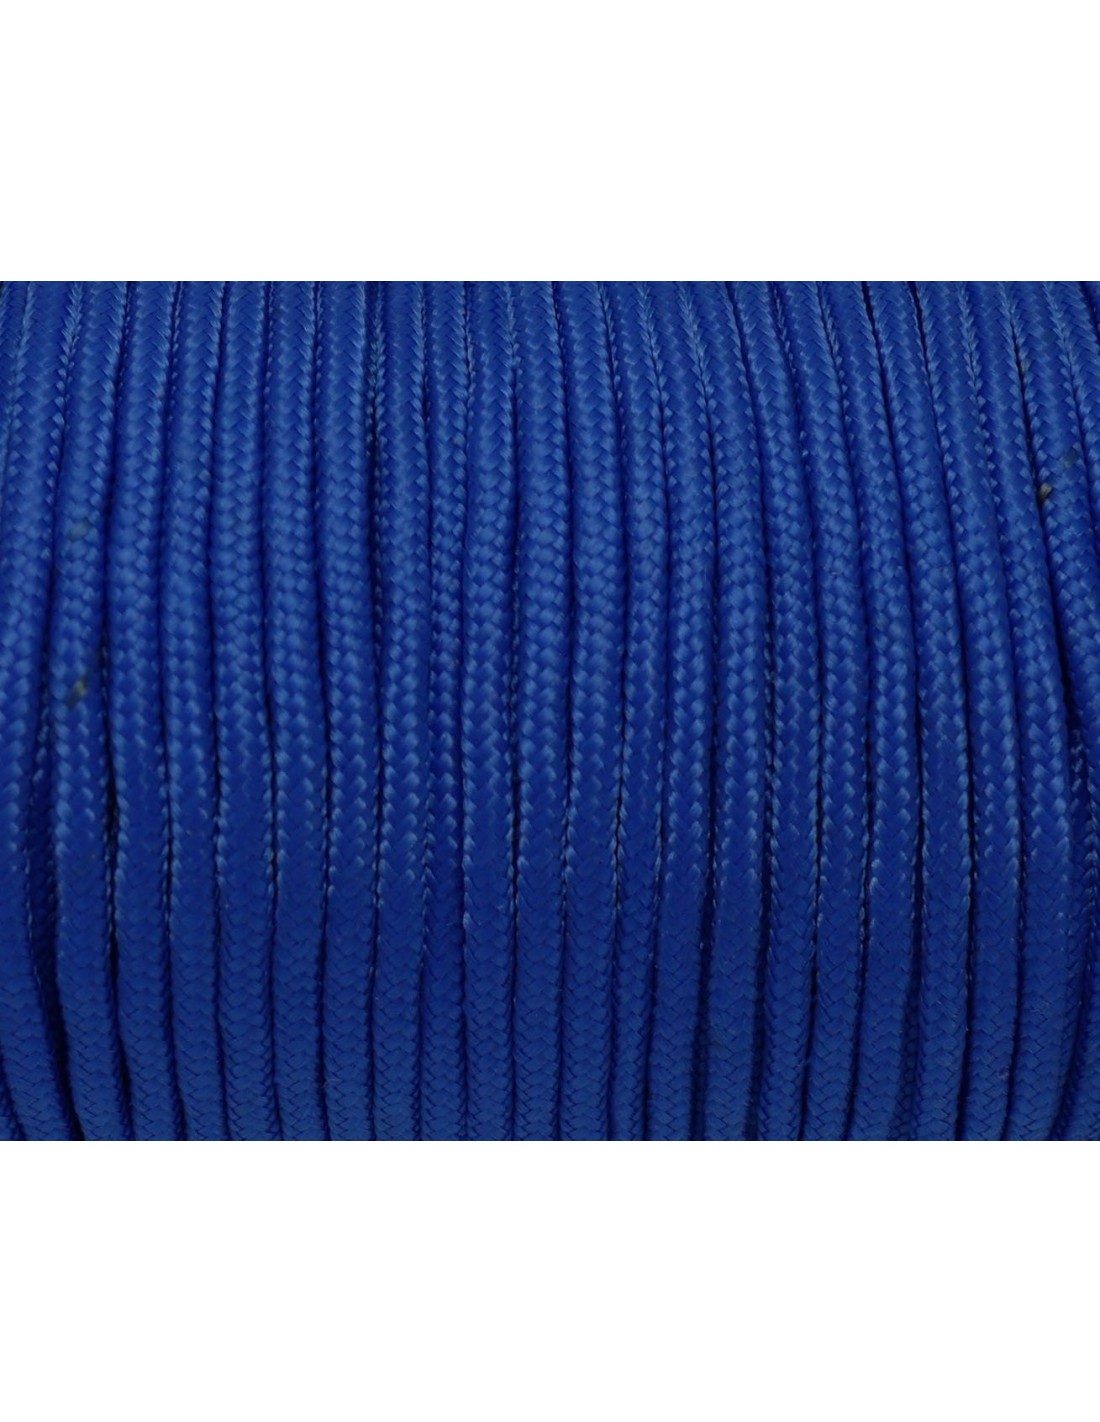 paracorde 3mm cordon tressé corde nylon gainé rouge bleu marine